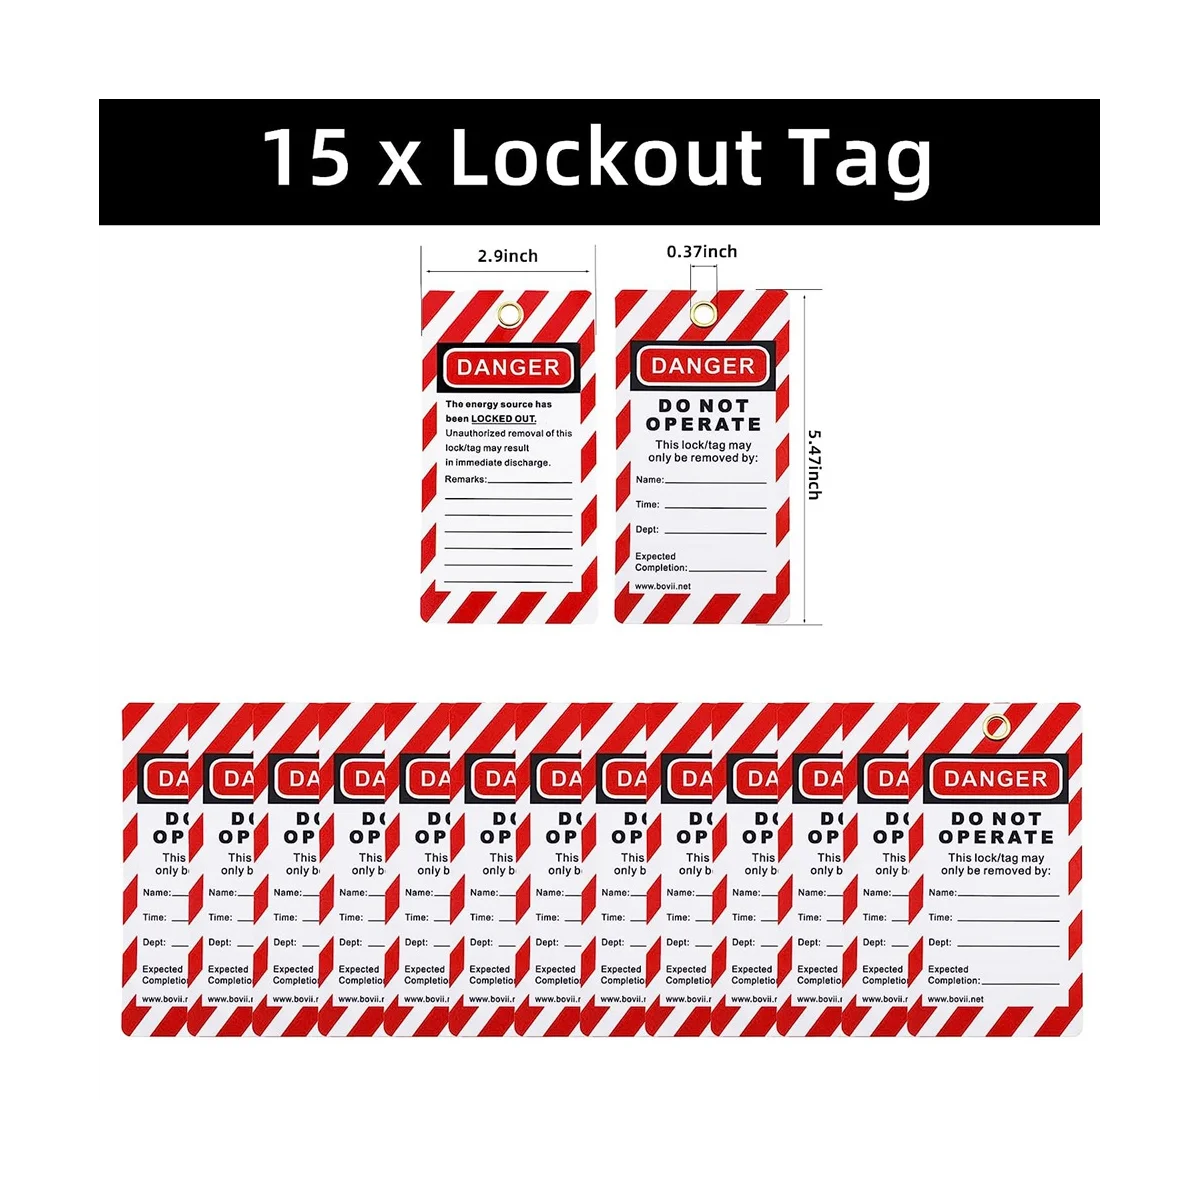 Комплект для разметки блокировки -Бирка для разметки блокировки, Нейлоновый галстук, Нейлоновая сумка для хранения, Навесной замок RedSafety, Замки для разметки блокировки (Красный комплект)